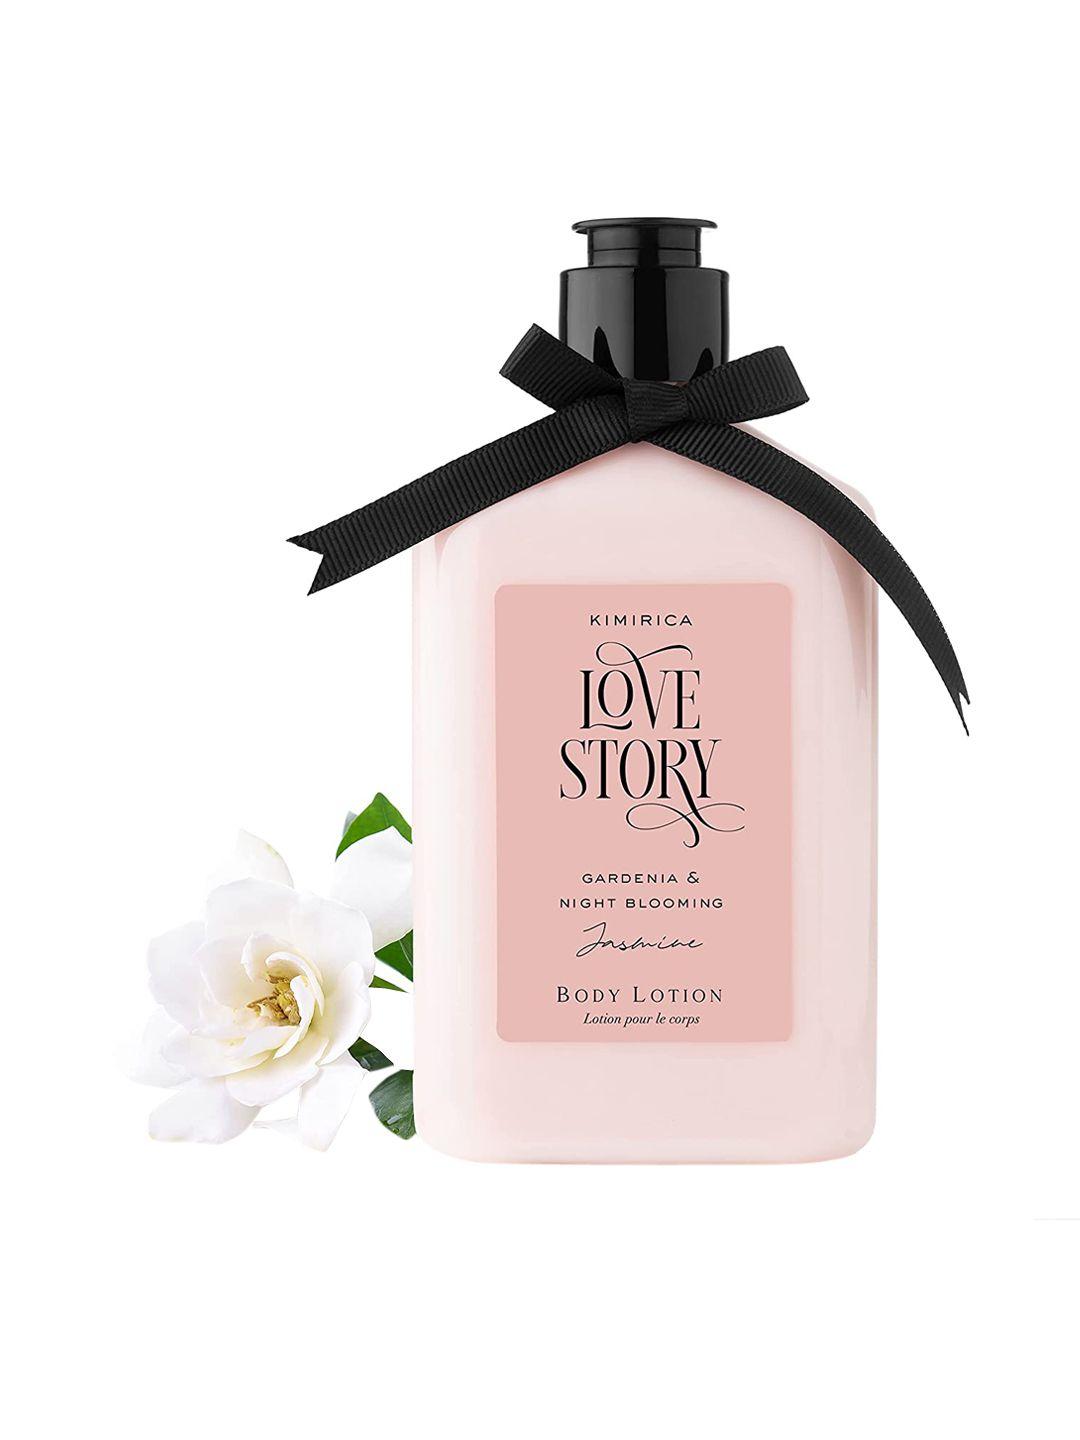 kimirica love story gardenia & night blooming jasmine body lotion 270ml